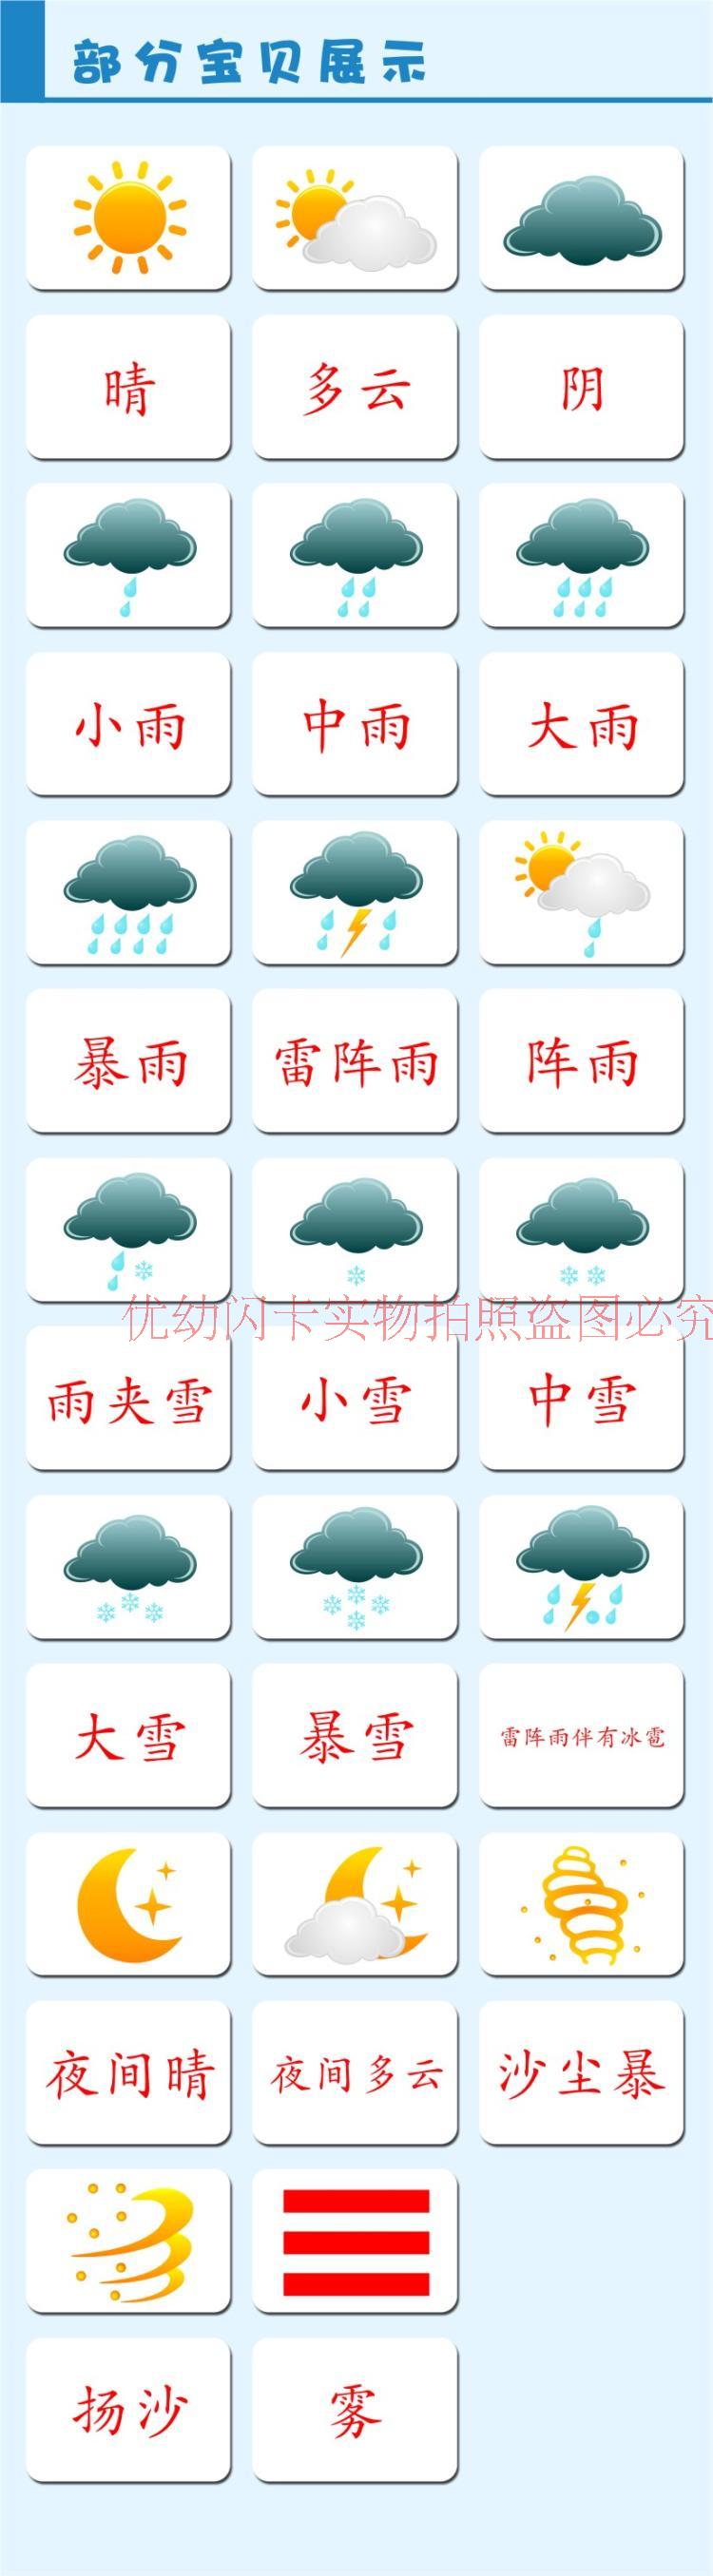 天气卡片图片大全中文图片